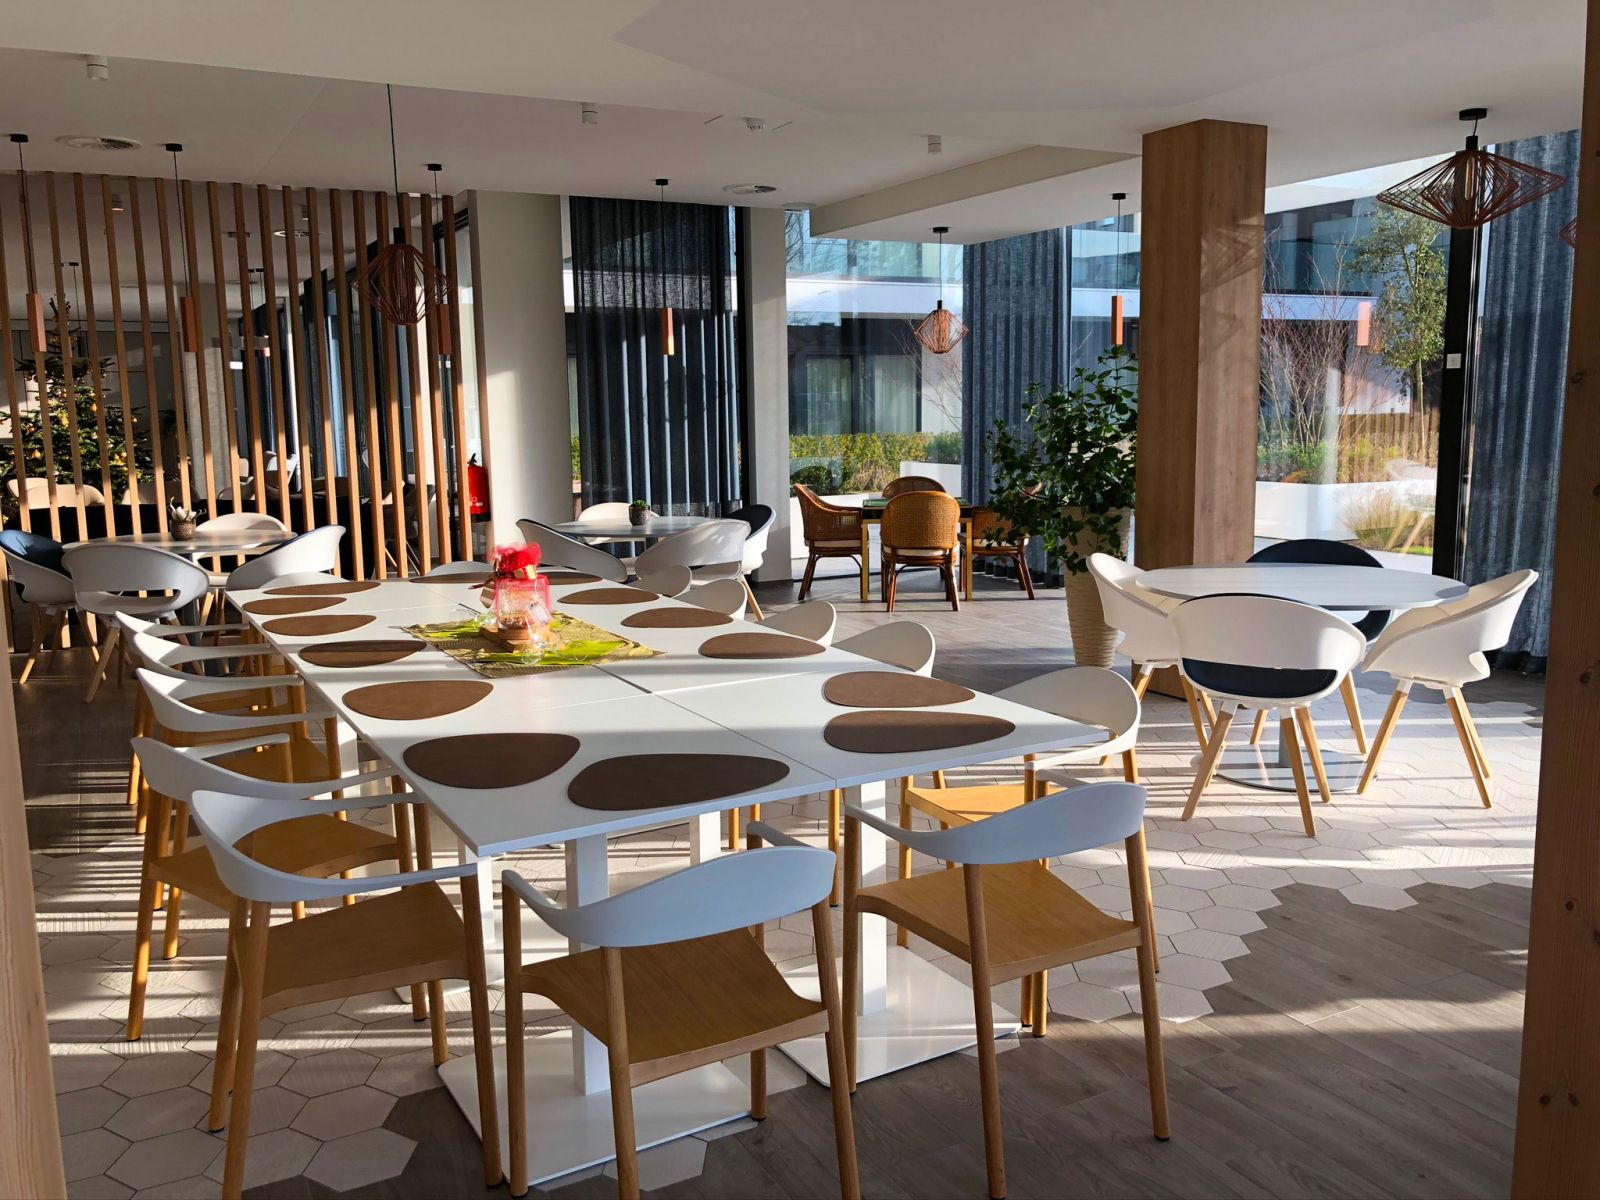 Mooi ingerichte tafels in een ergonomische omgeving in Cypres